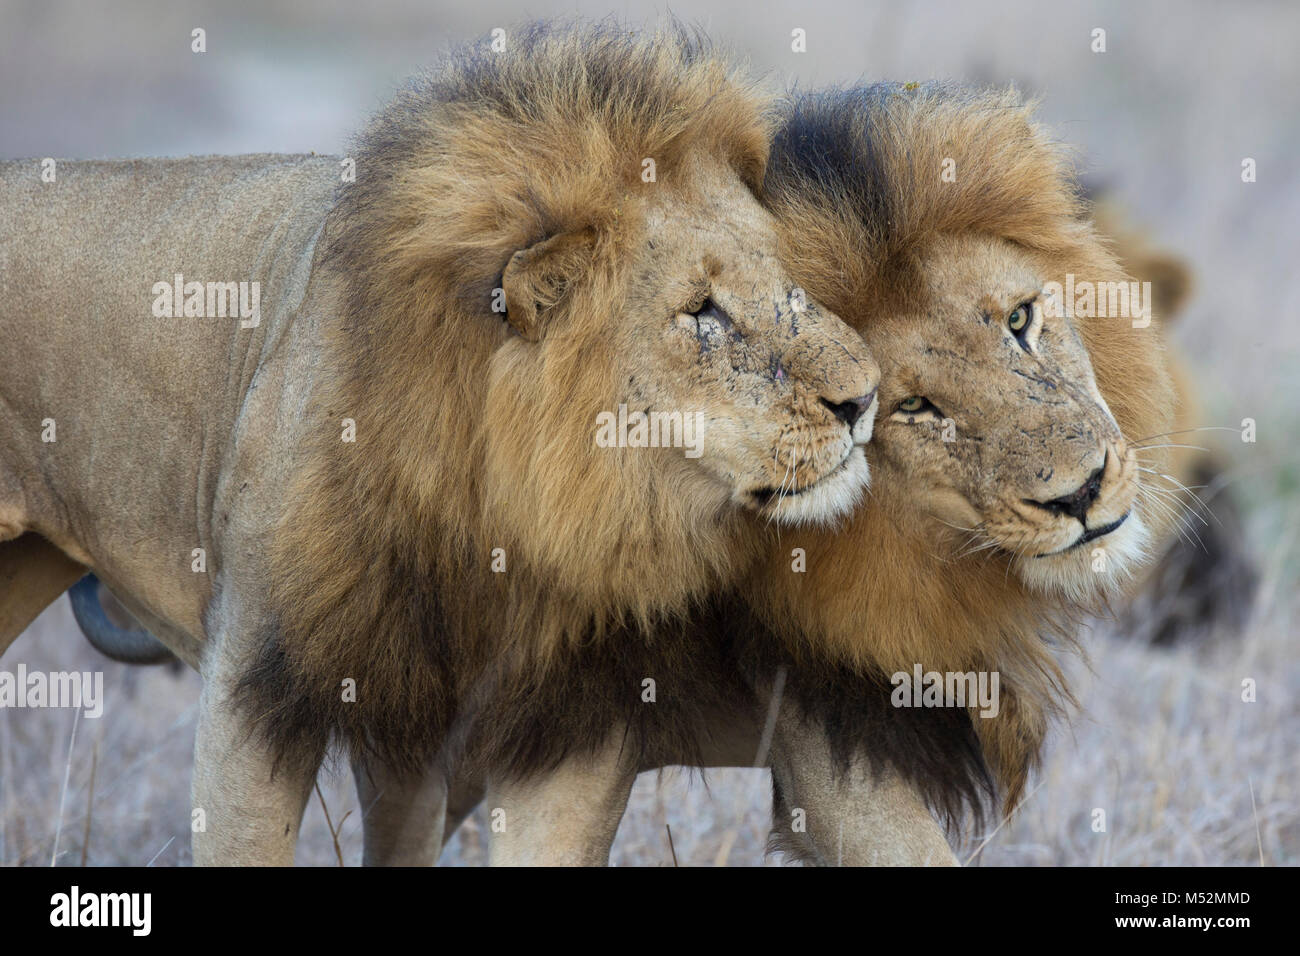 Deux mâles adultes des lions (Panthera leo) visage frotter pour saluer Banque D'Images